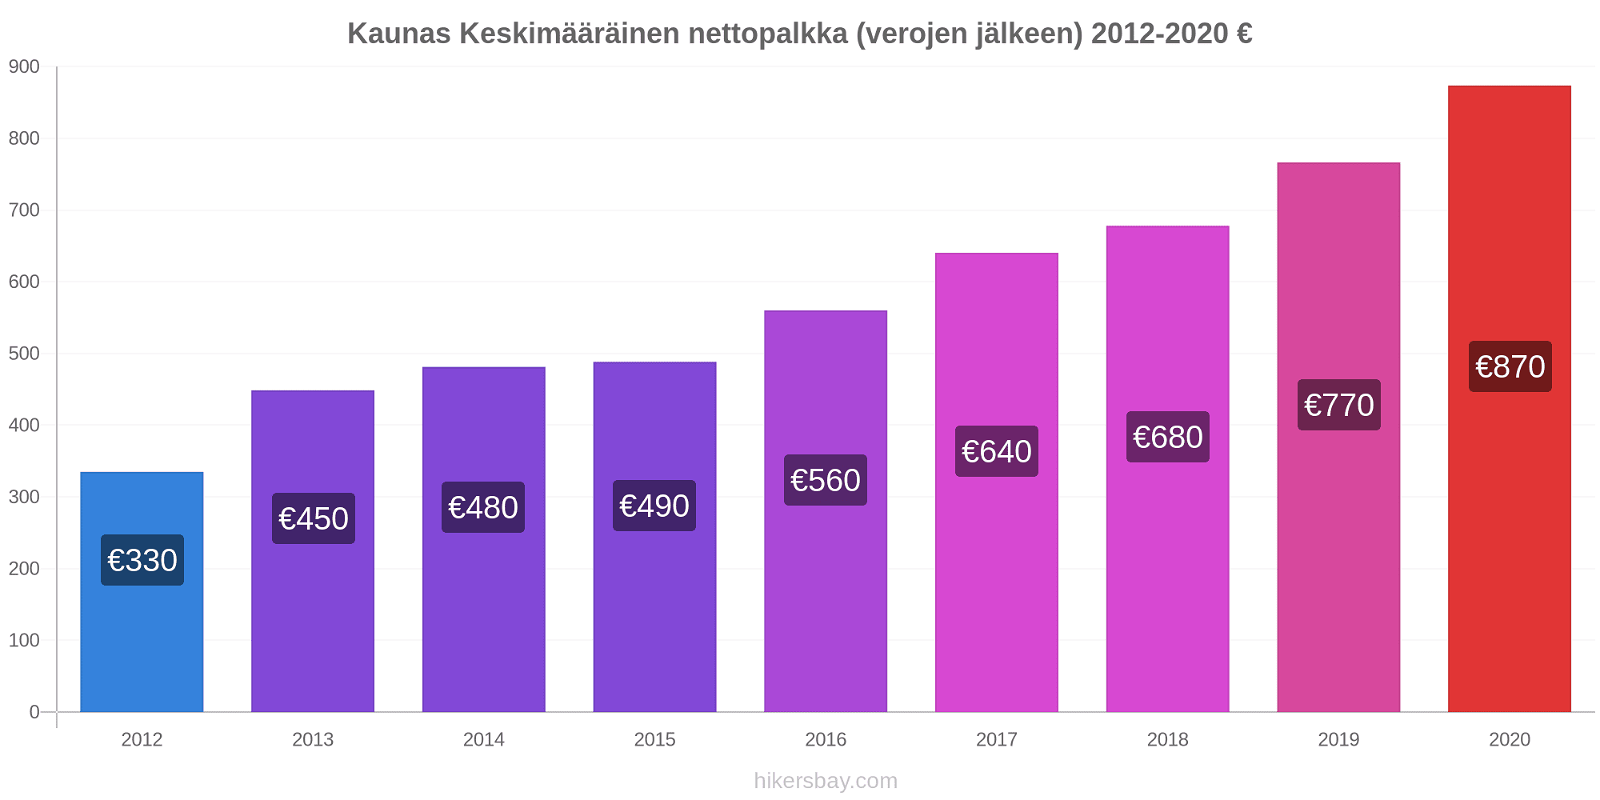 Kaunas hintojen muutokset Keskimääräinen nettopalkka (verojen jälkeen) hikersbay.com